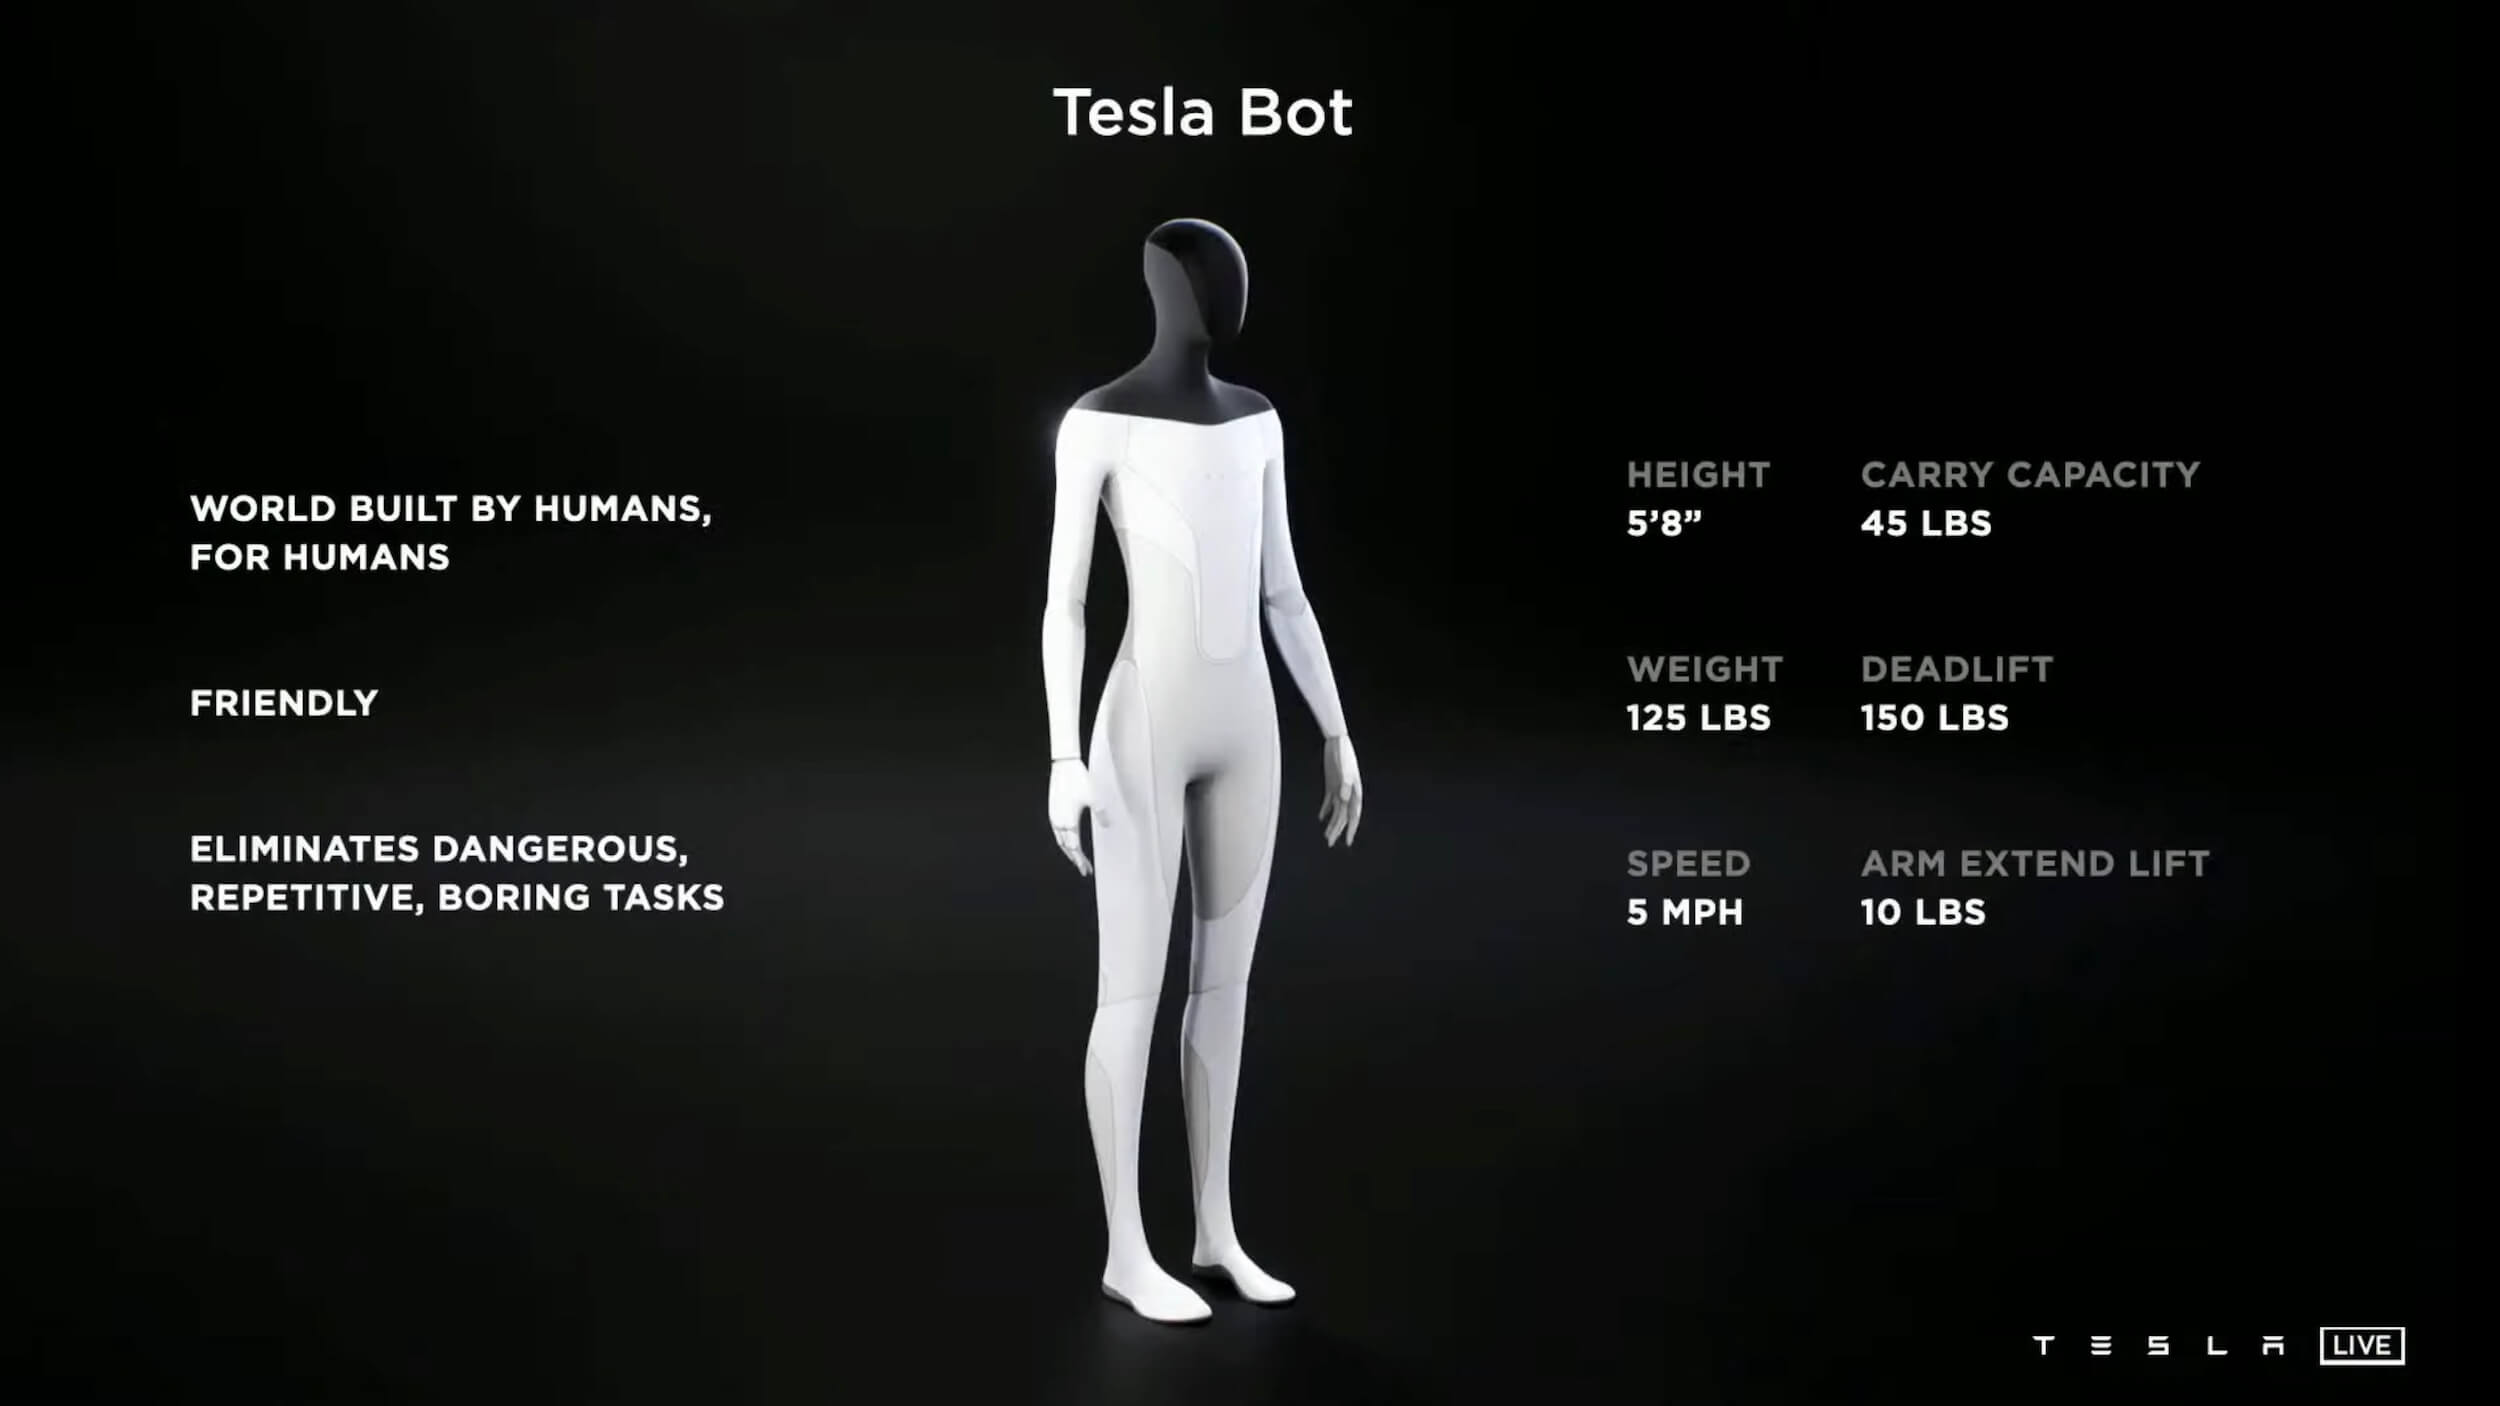 Tesla Robot purpose